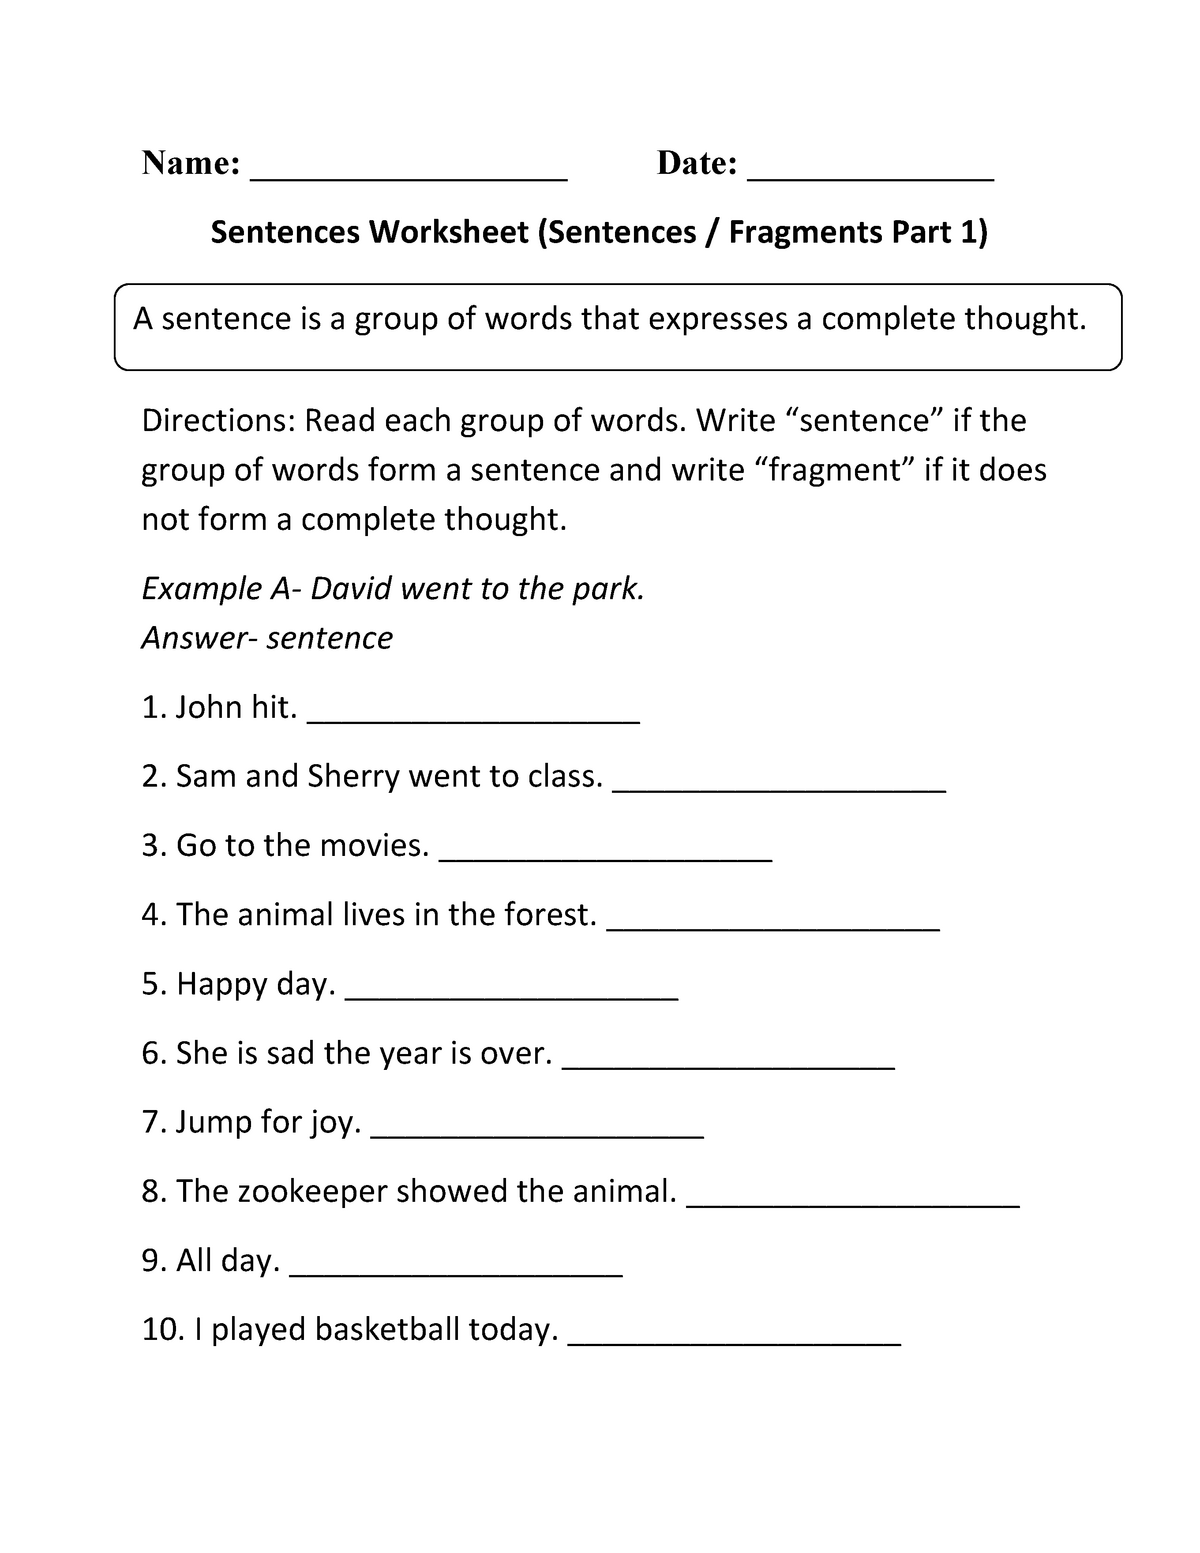 sentence-worksheet-for-grade-3-name-date-sentences